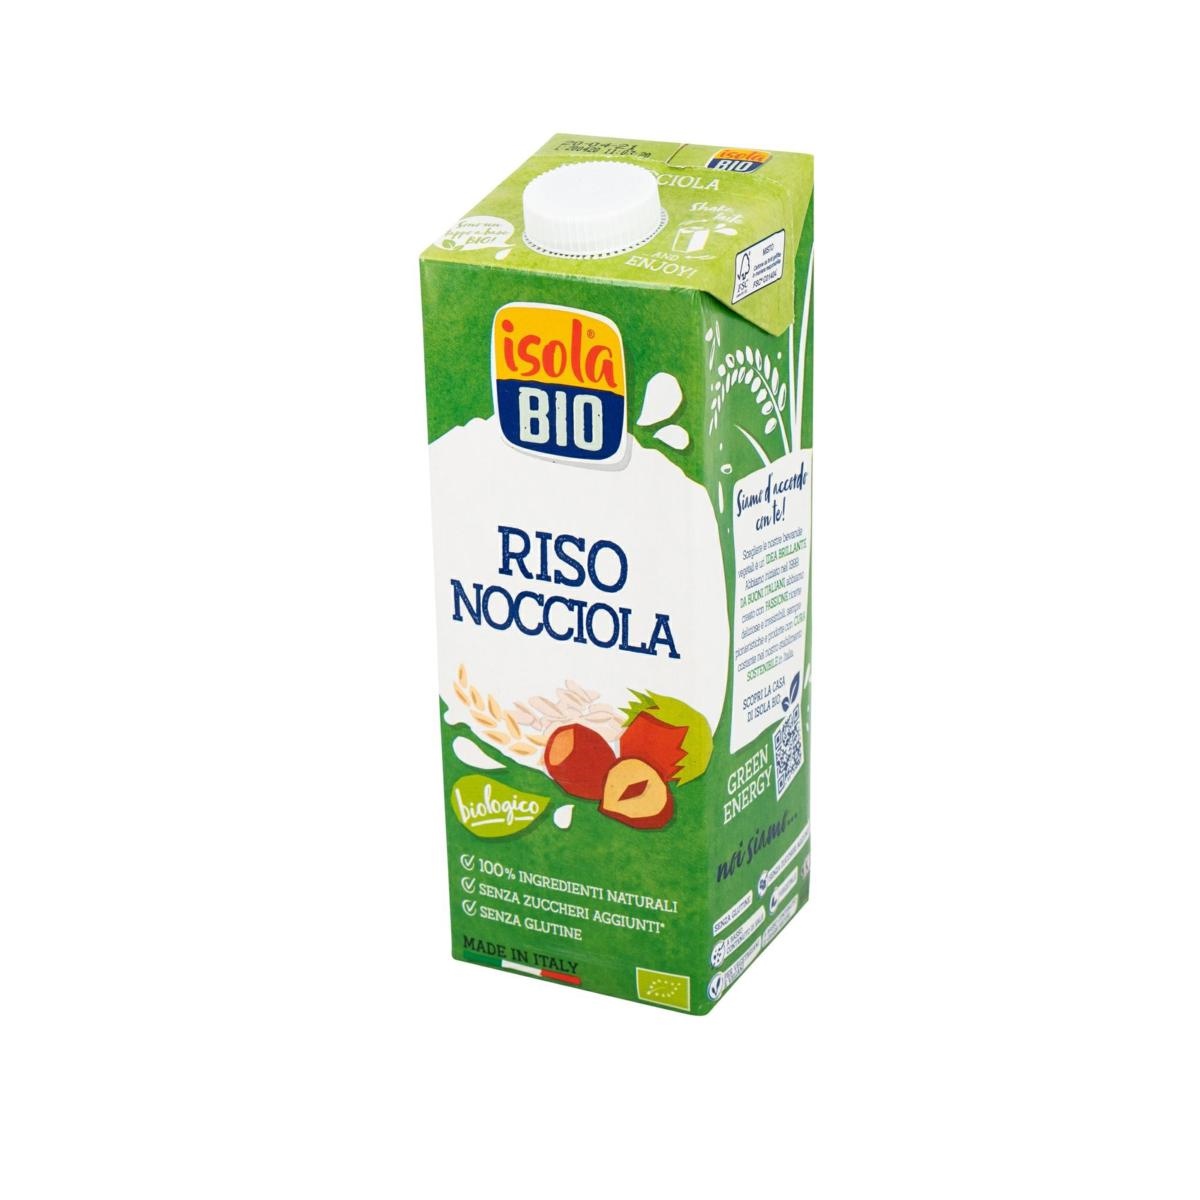 RISO NOCCIOLA DRINK 1 L(ISOLA BIO)